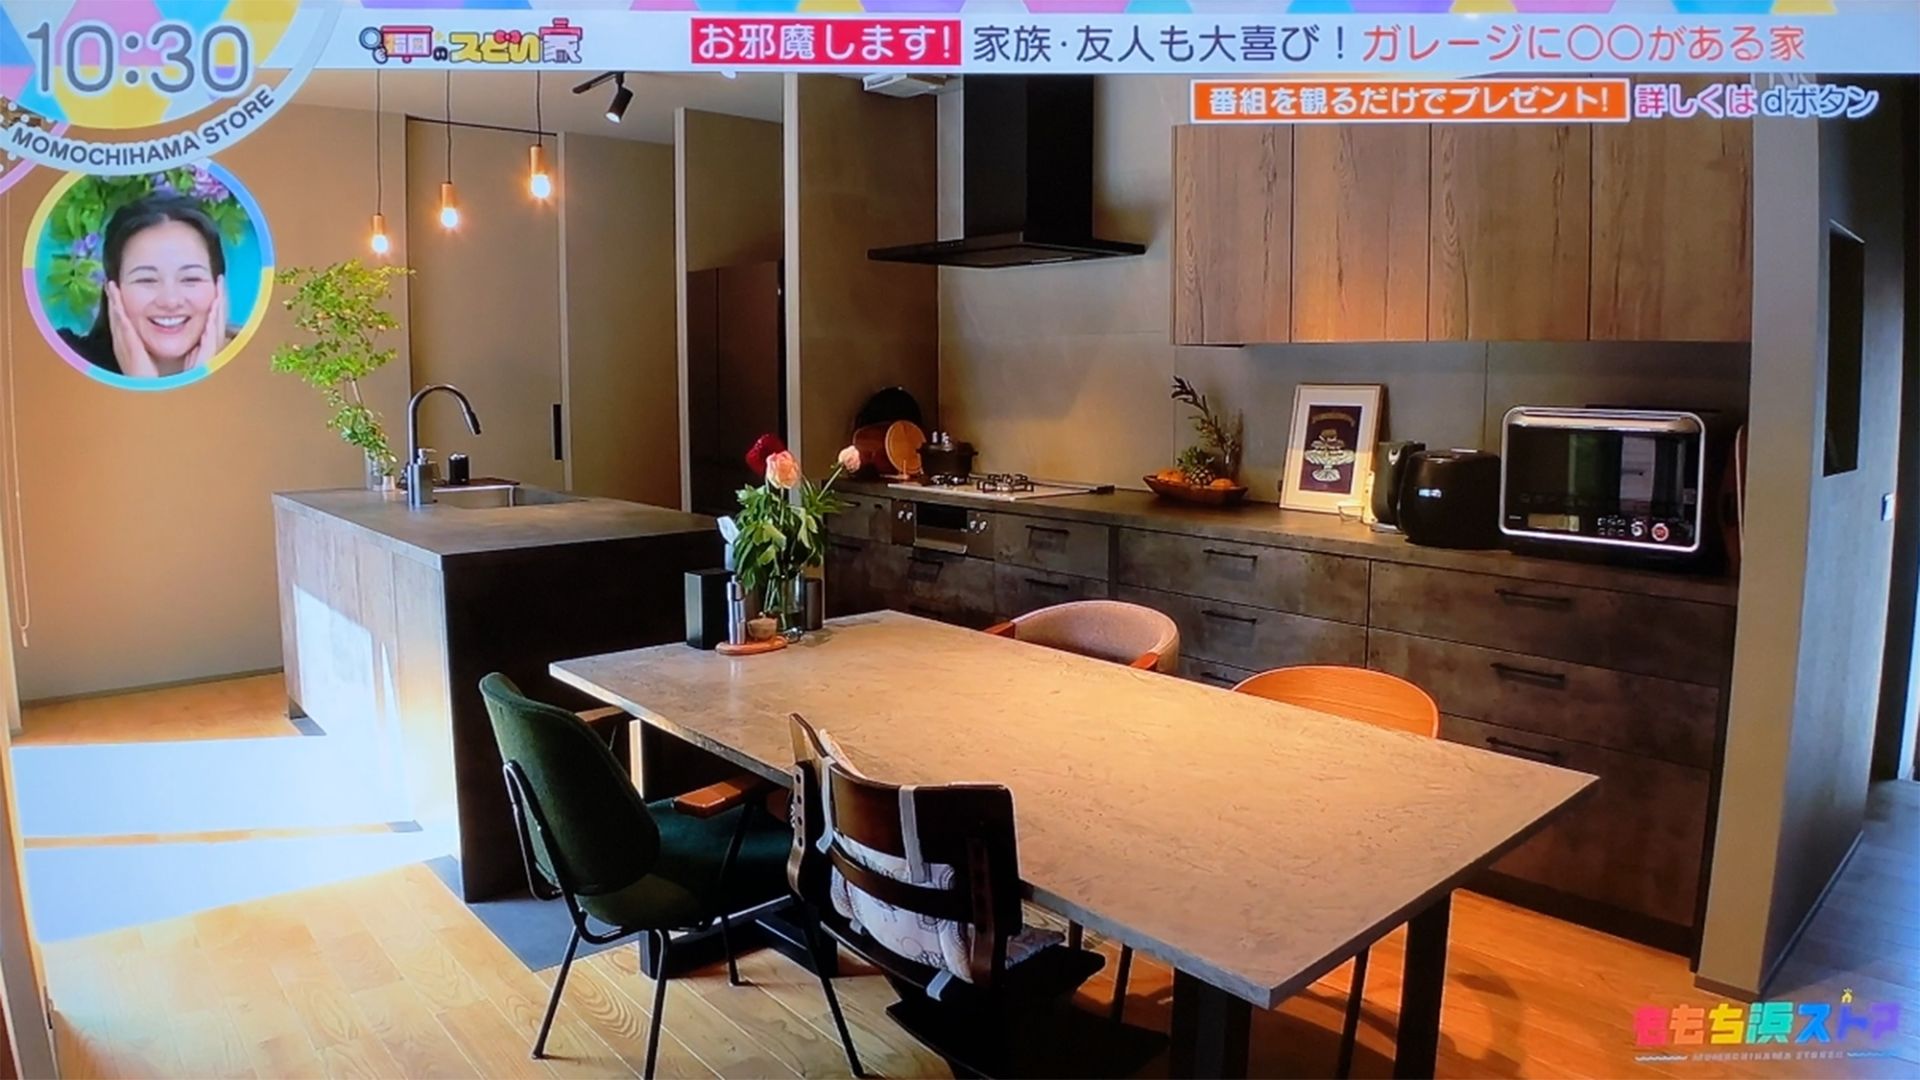 TNC（テレビ西日本）でオーナー様のお宅が紹介されました